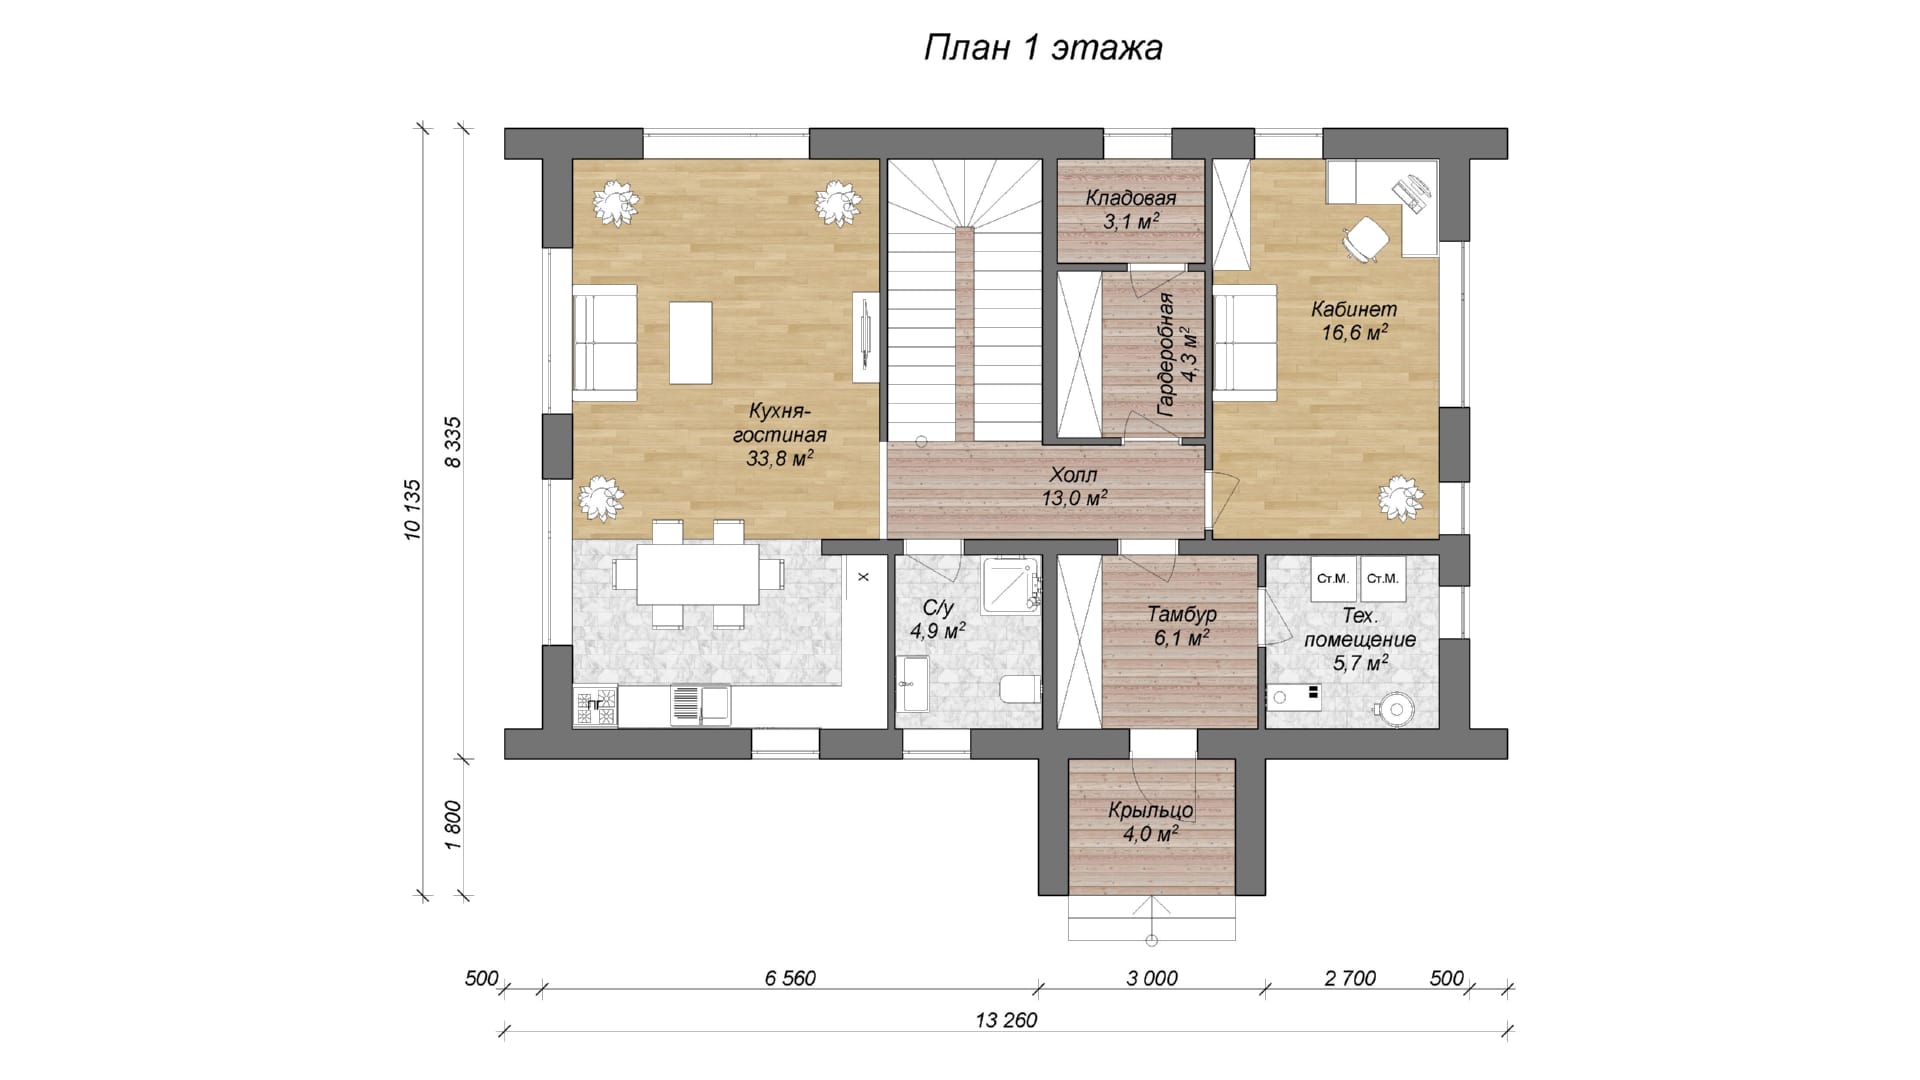 планировка двухэтажного дома барнхаус